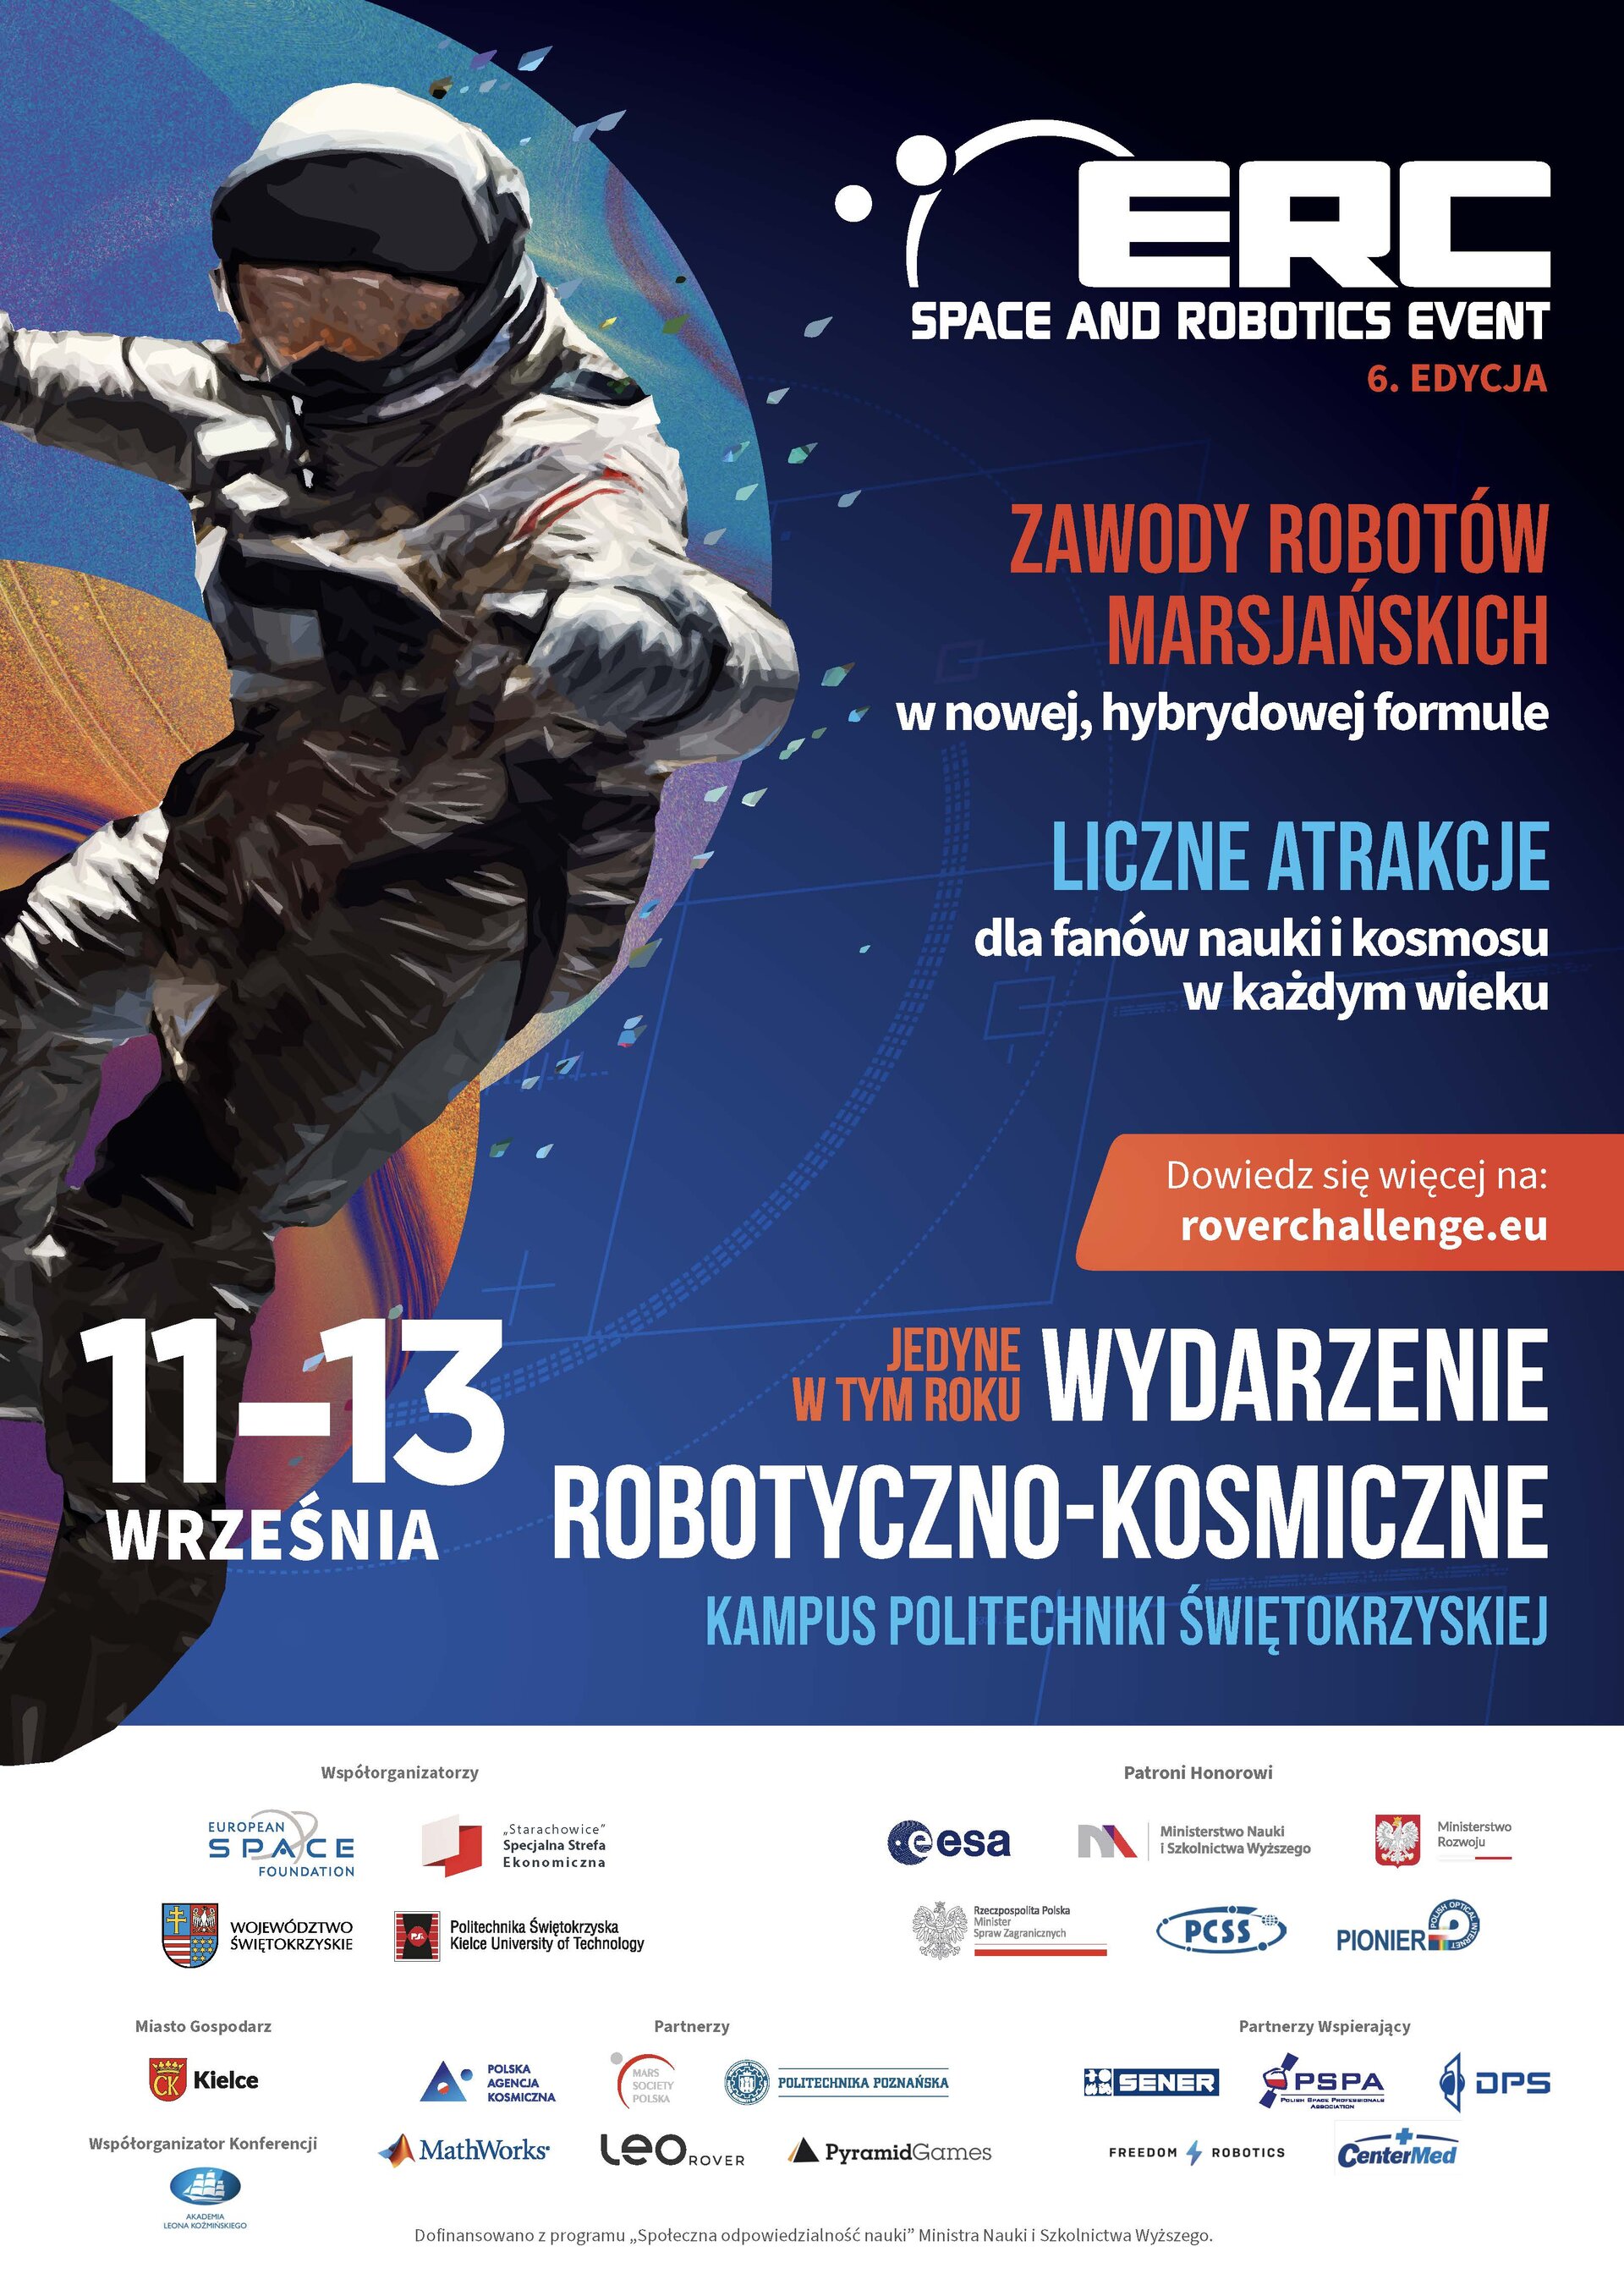 ERC Space and Robotics Event to prestiżowe wydarzenie robotyczno – kosmiczne łączące międzynarodowe zawody robotów mobilnych z pokazami naukowo – technologicznymi.